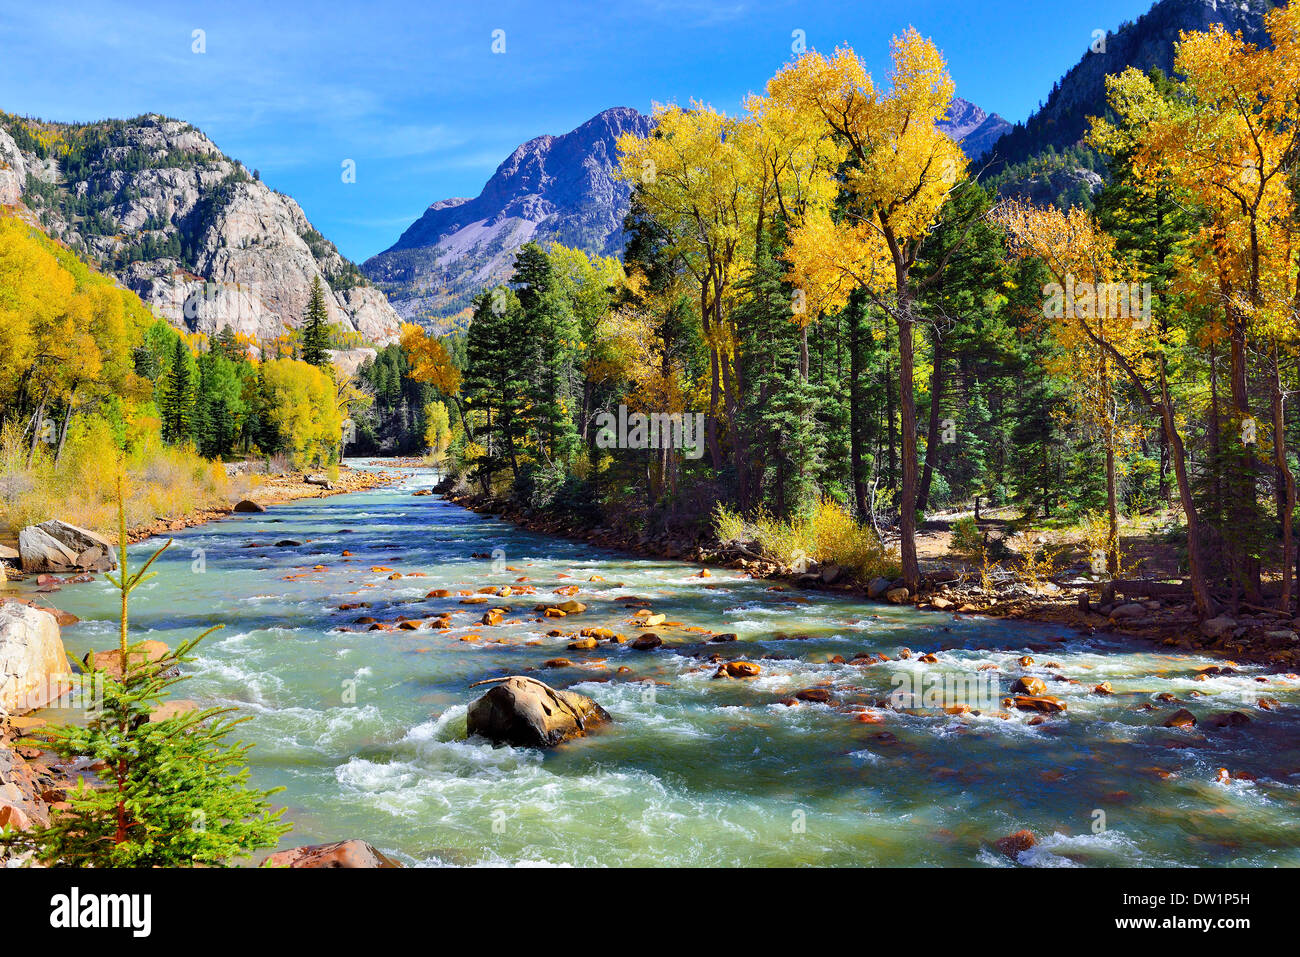 Gebirgsfluss und bunten Bergen von Colorado Laub Saison Stockfoto